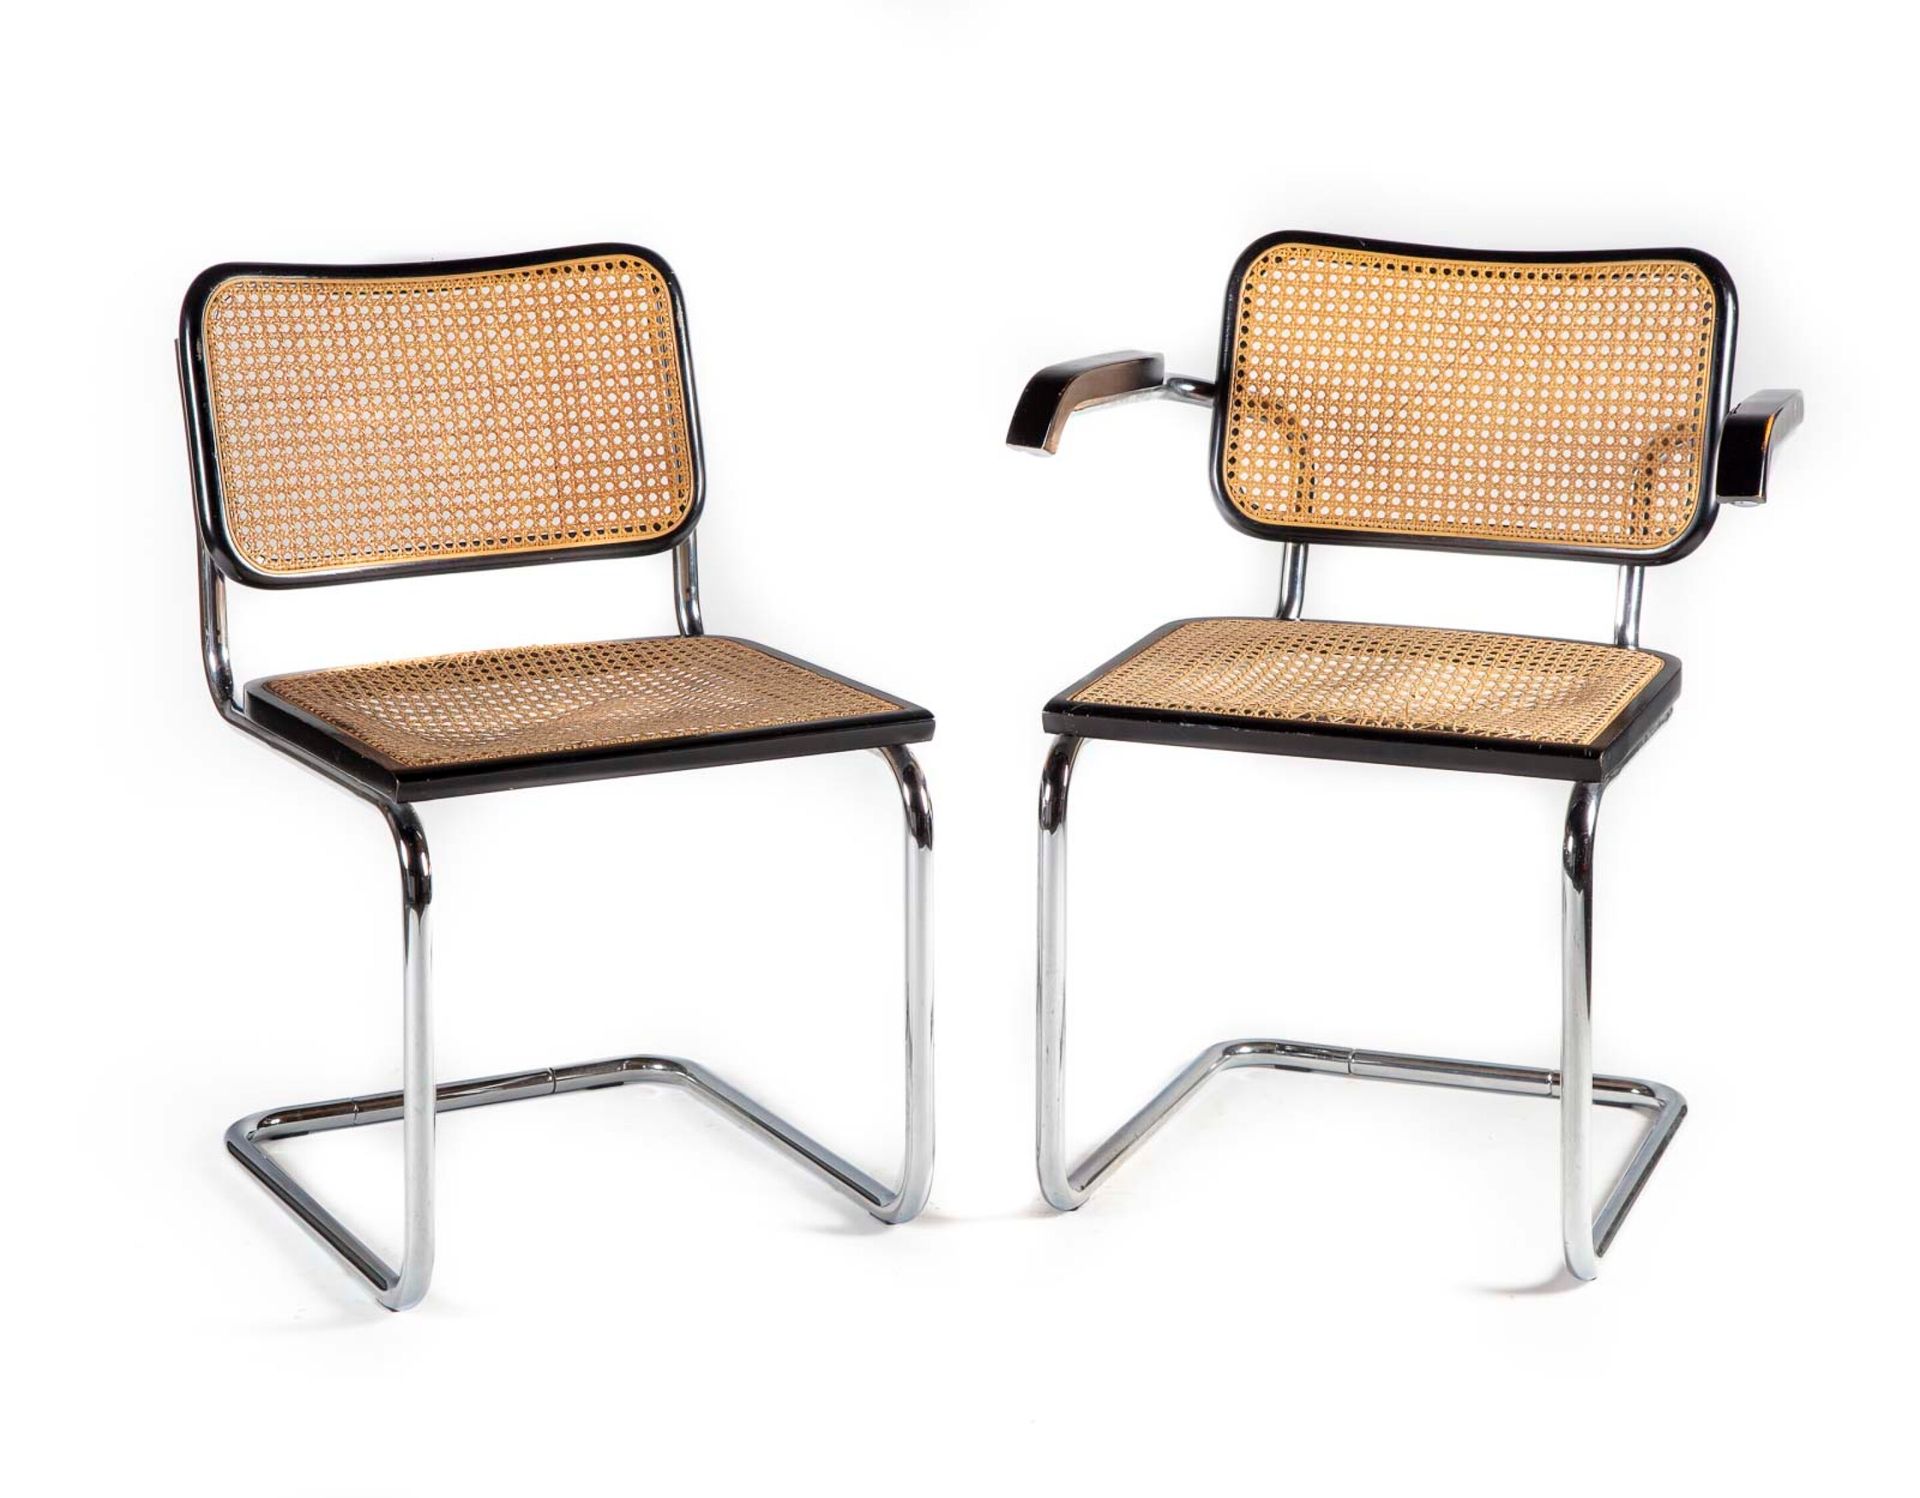 Null Set bestehend aus einem Stuhl und einem Sessel mit Stahlgestell, lackiertem&hellip;